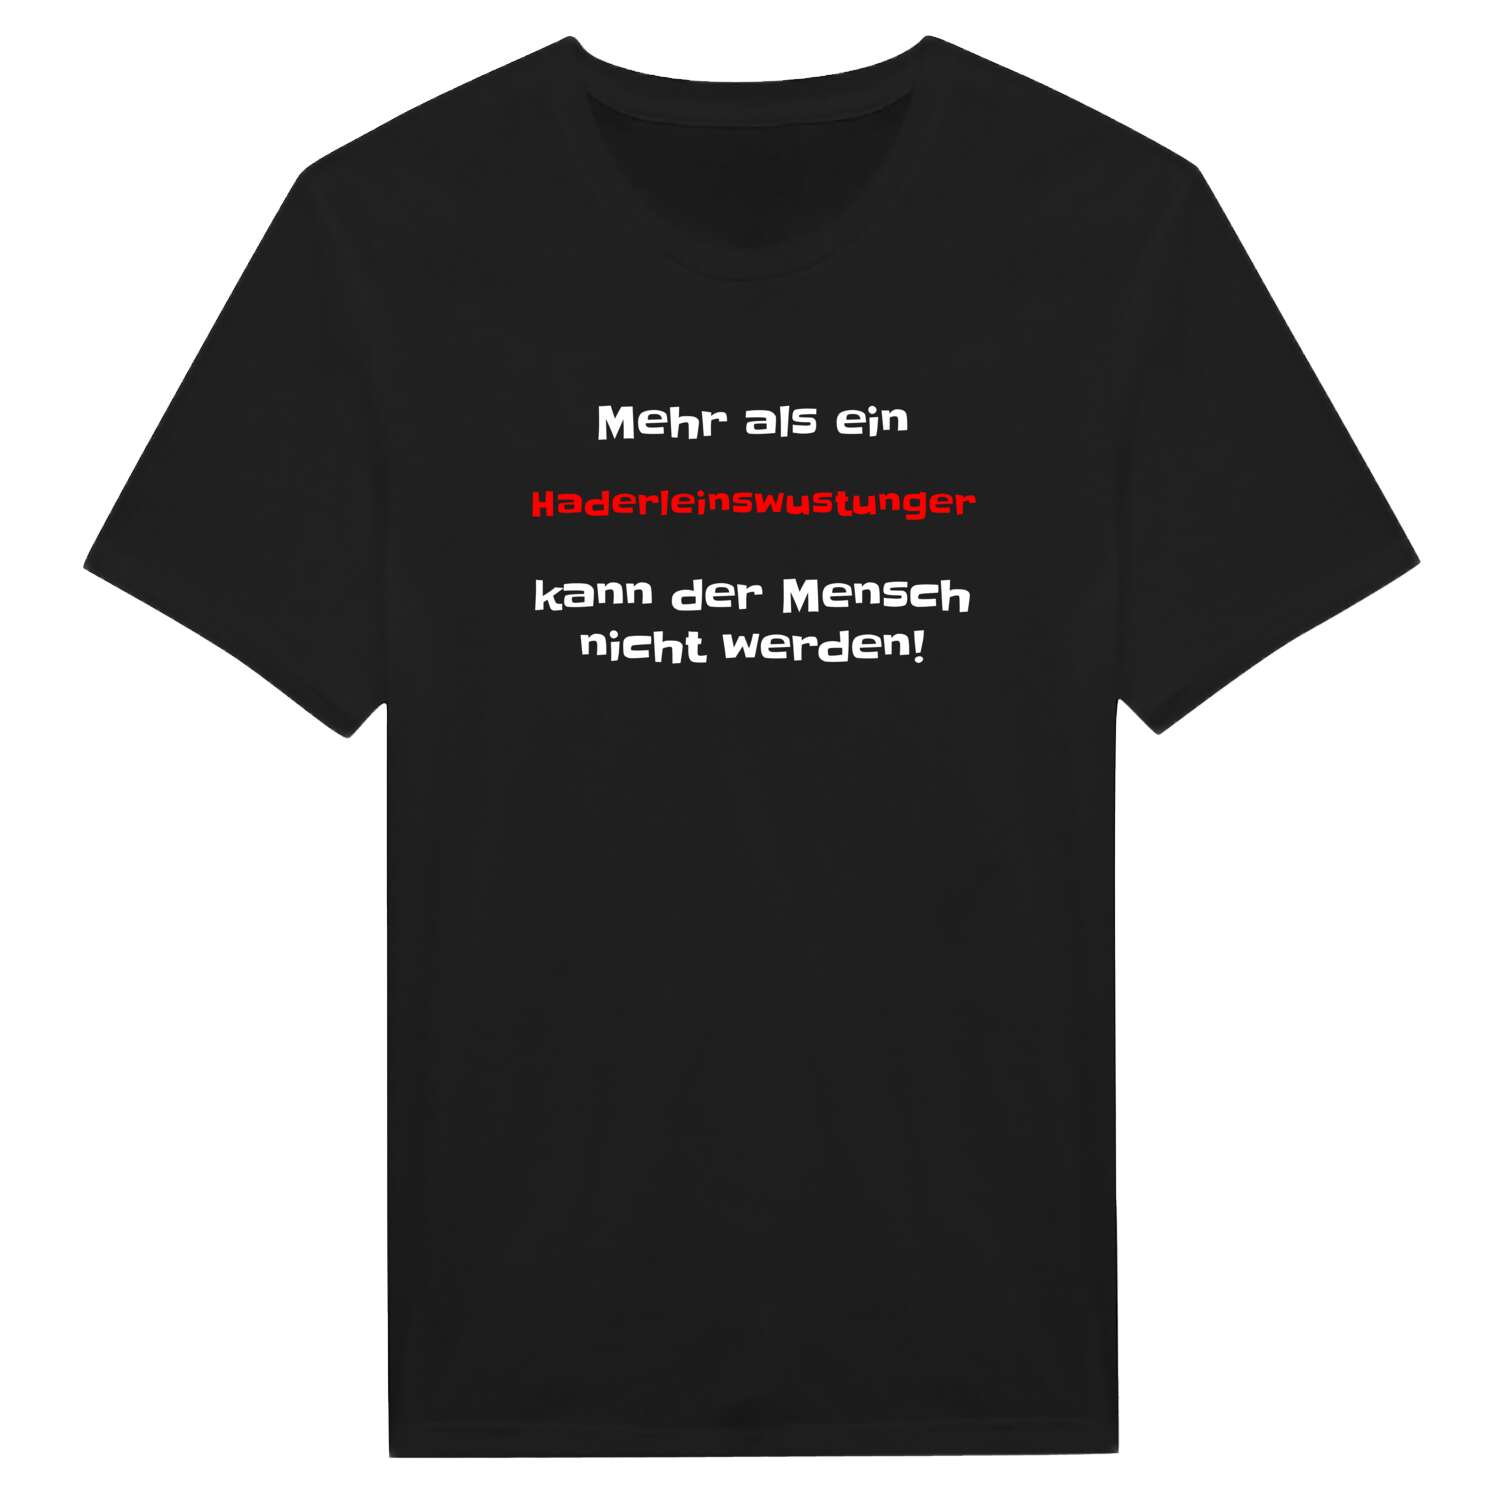 Haderleinswustung T-Shirt »Mehr als ein«